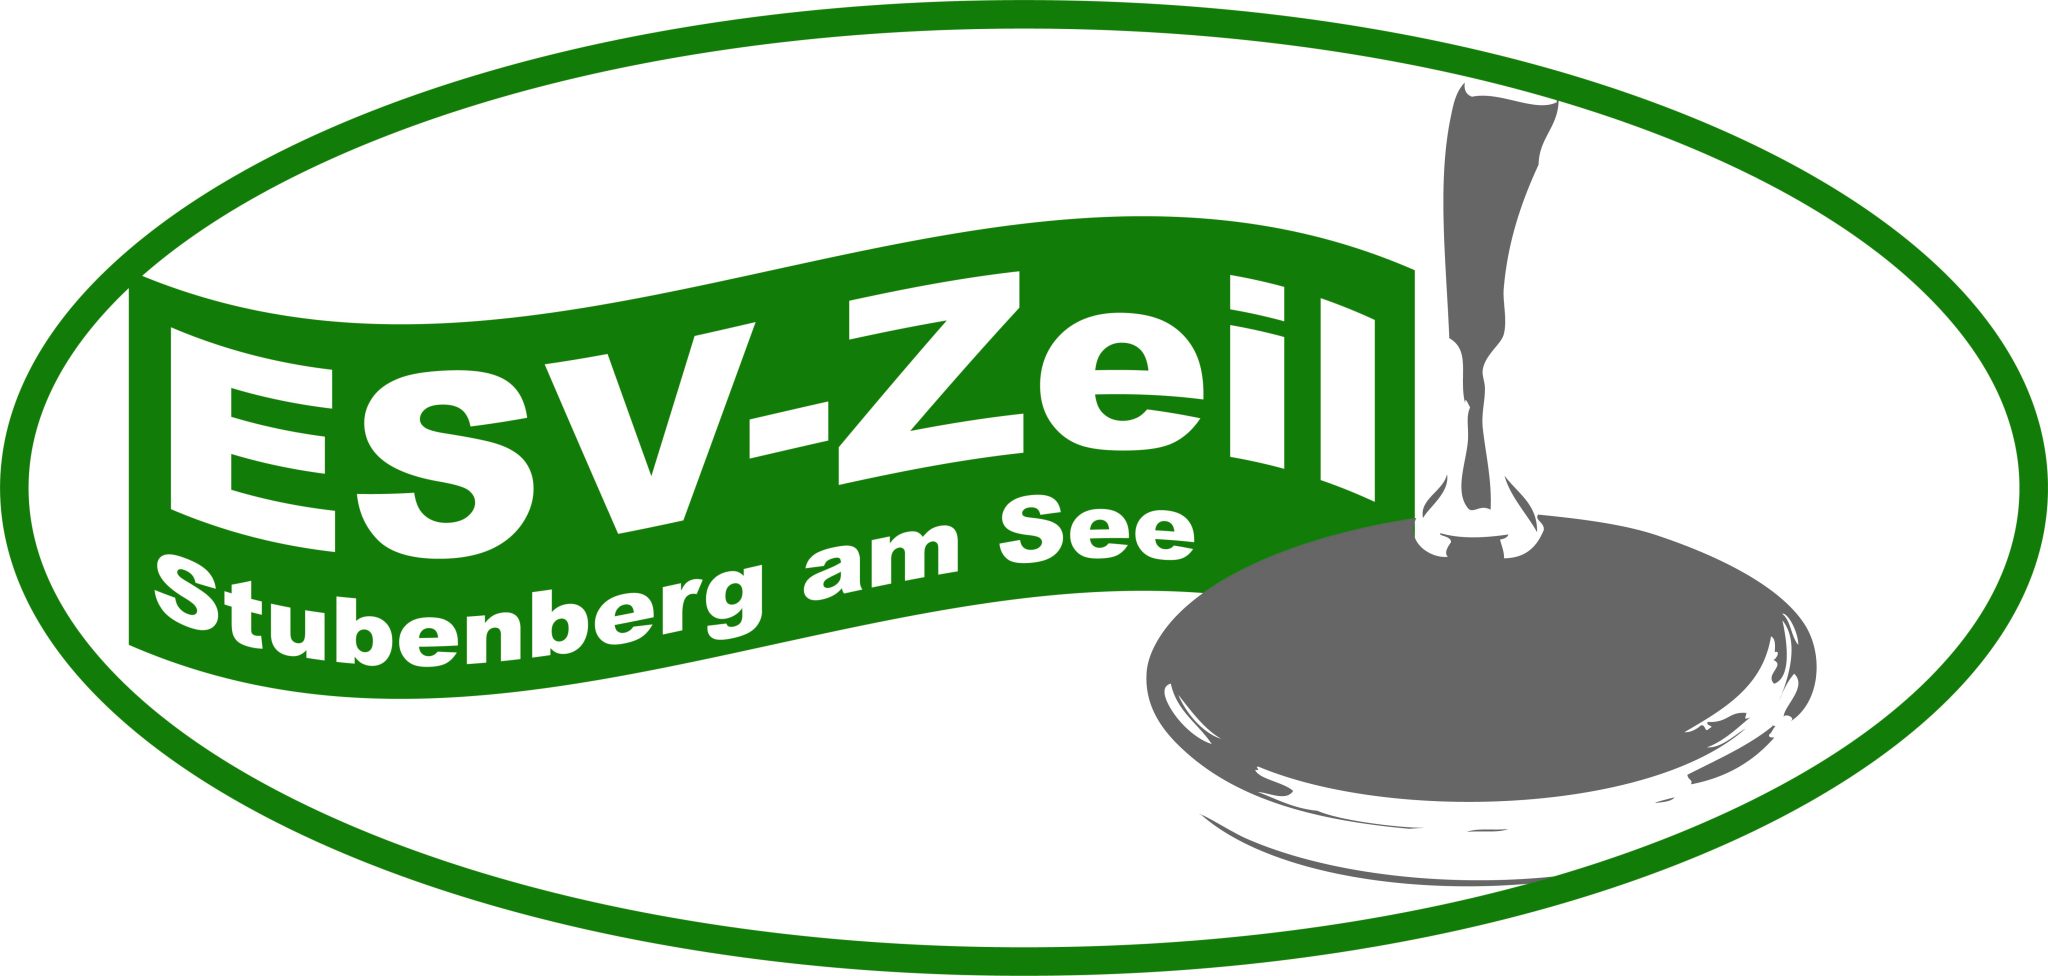 ESV Zeil Stubenberg 2